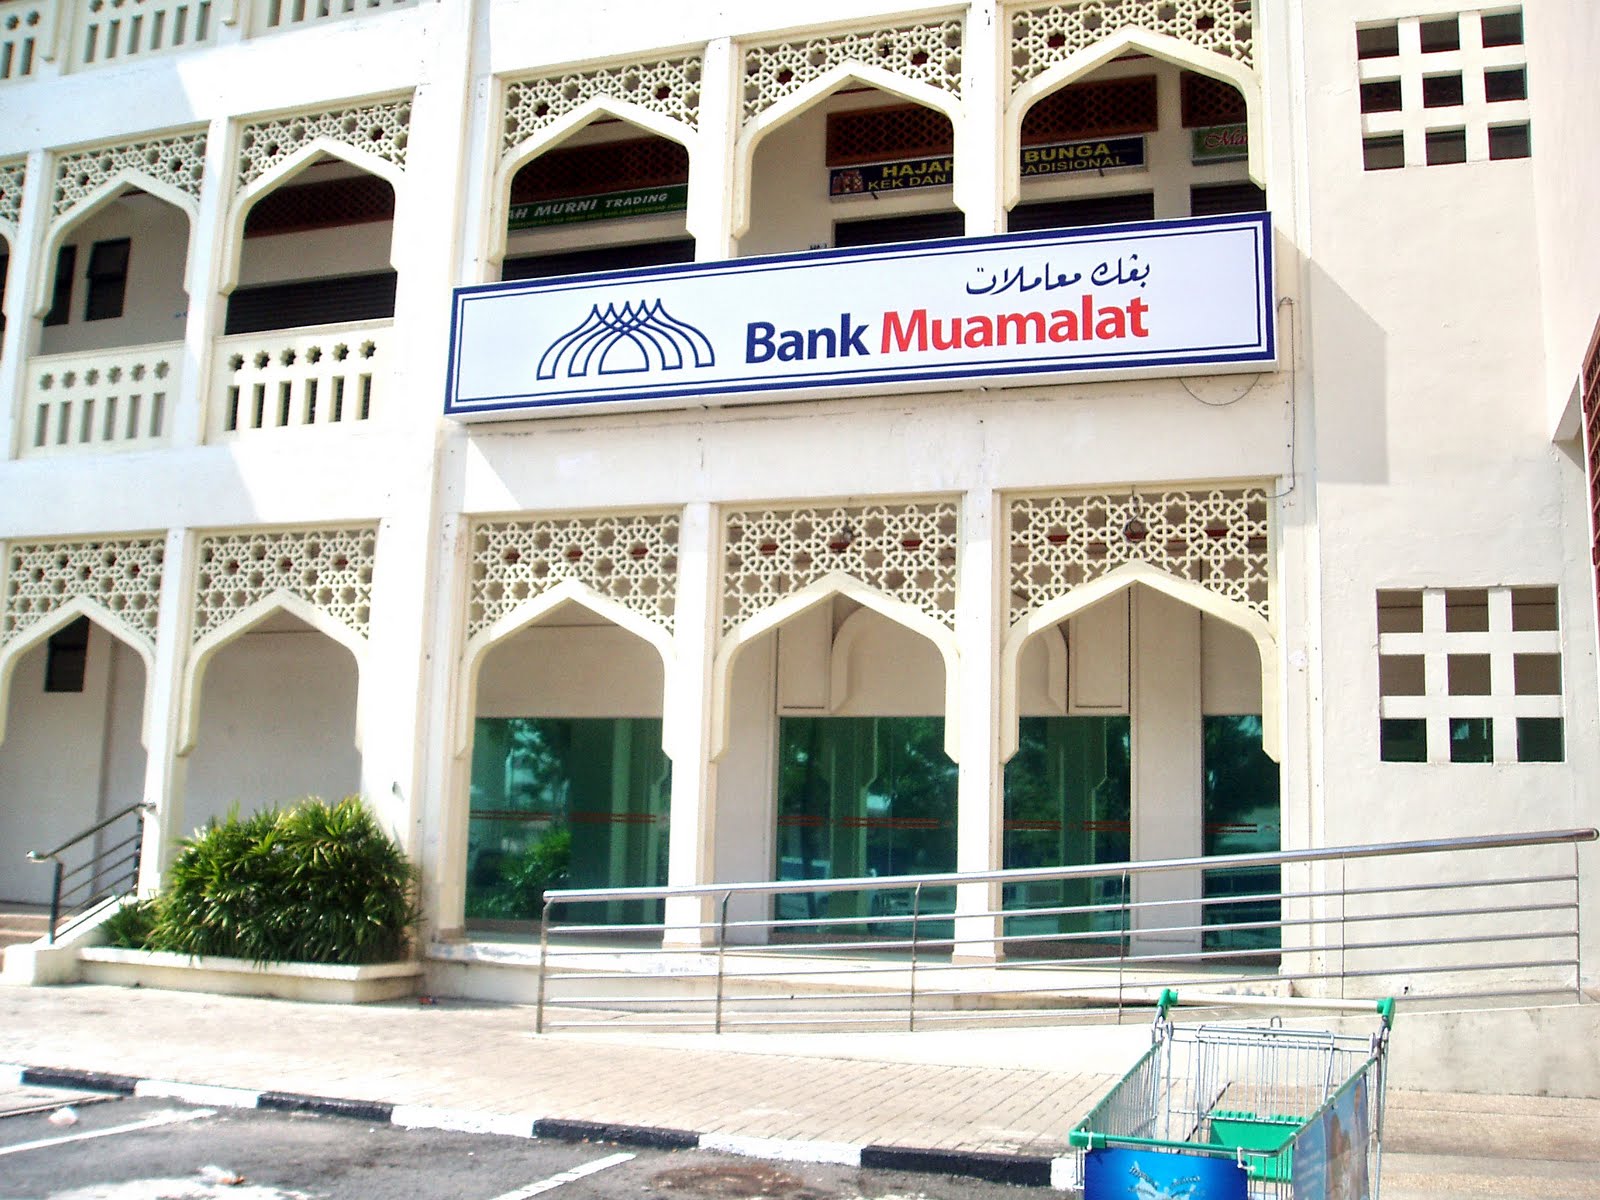 Bank Muamalat Cawangan Souq Al Bukhary: Bank Muamalat ...